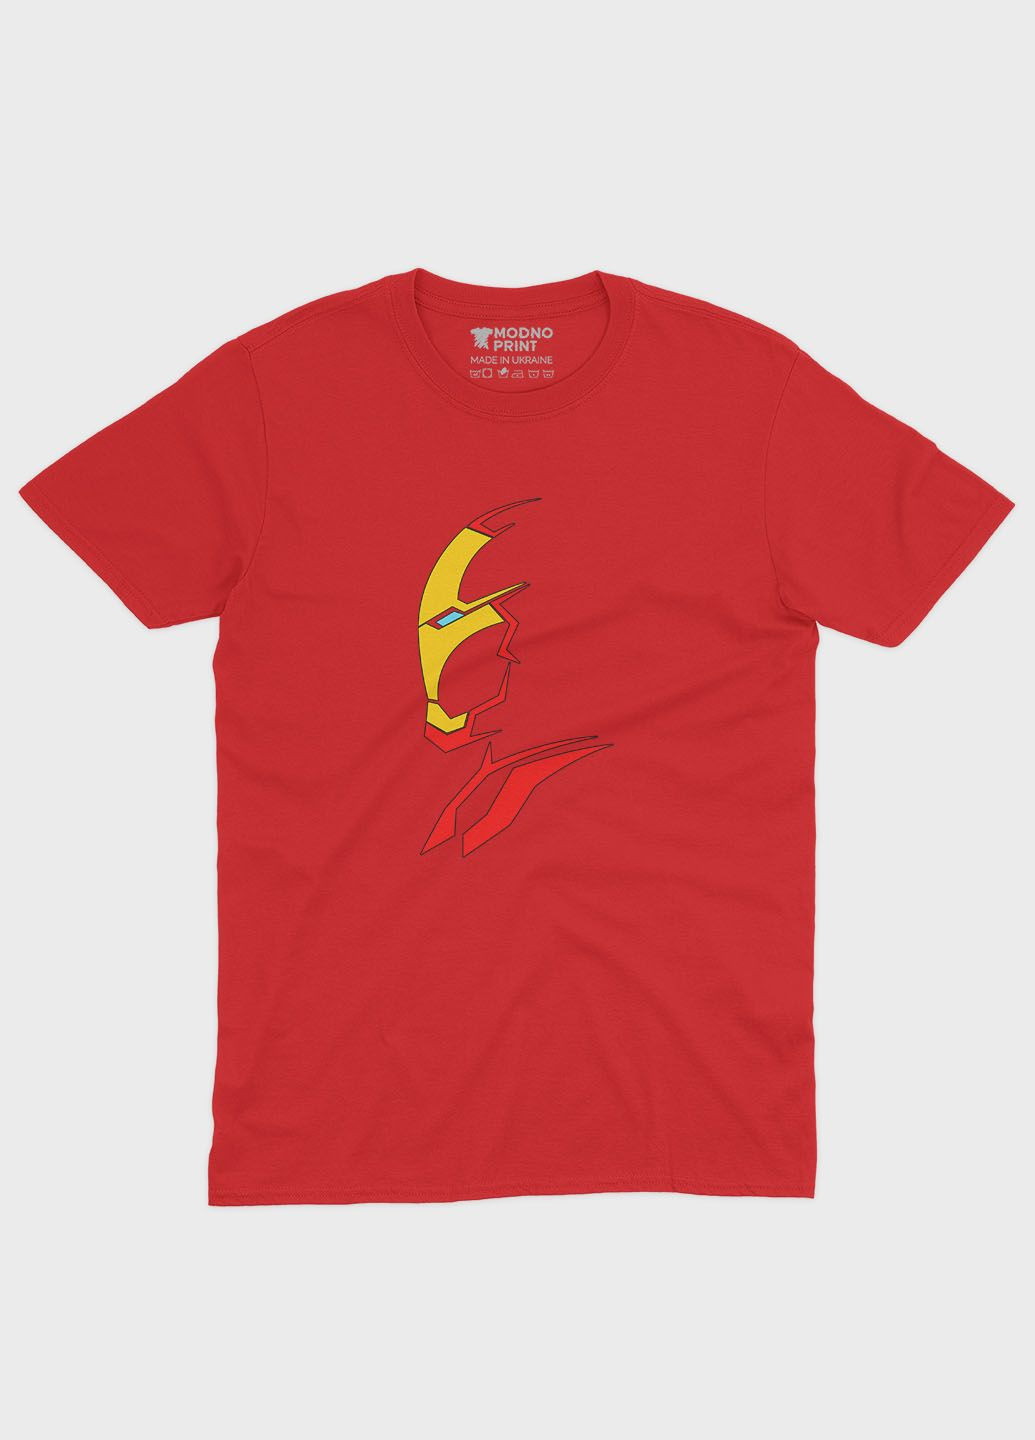 Червона демісезонна футболка для хлопчика з принтом супергероя - залізна людина (ts001-1-sre-006-016-020-b) Modno